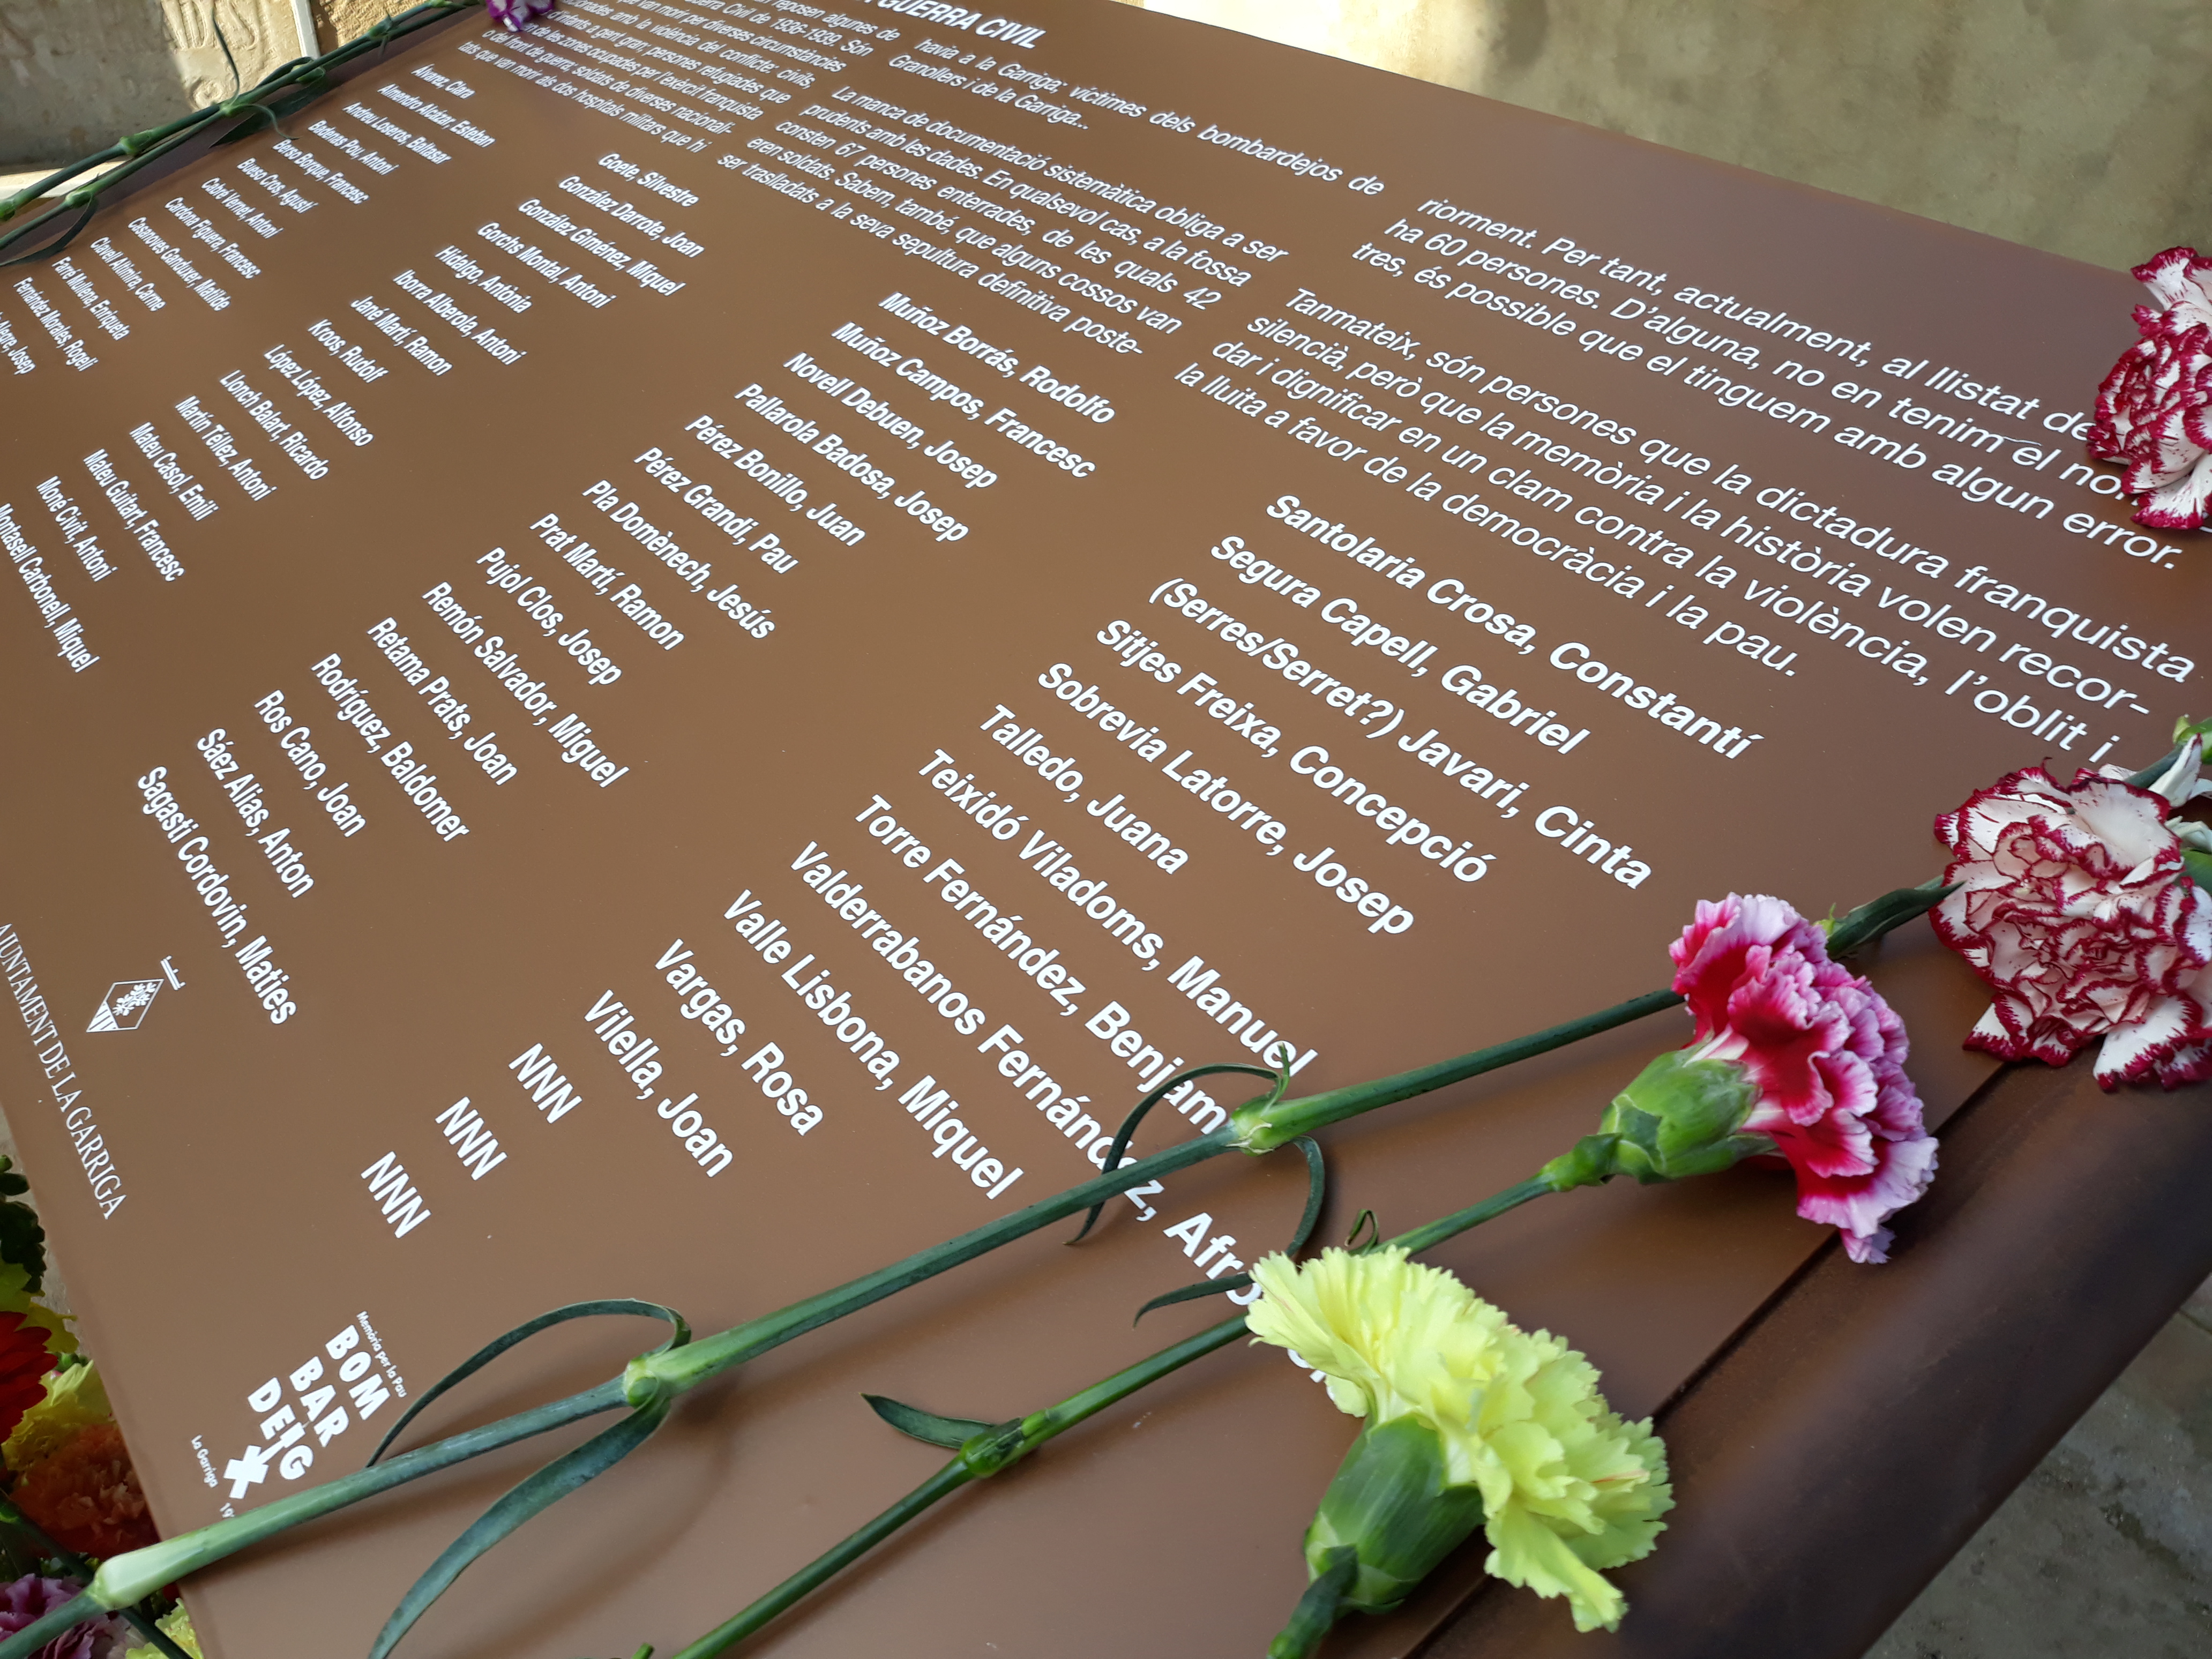 Acte institucional d'homenatge a les víctimes del bombardeig la Garriga